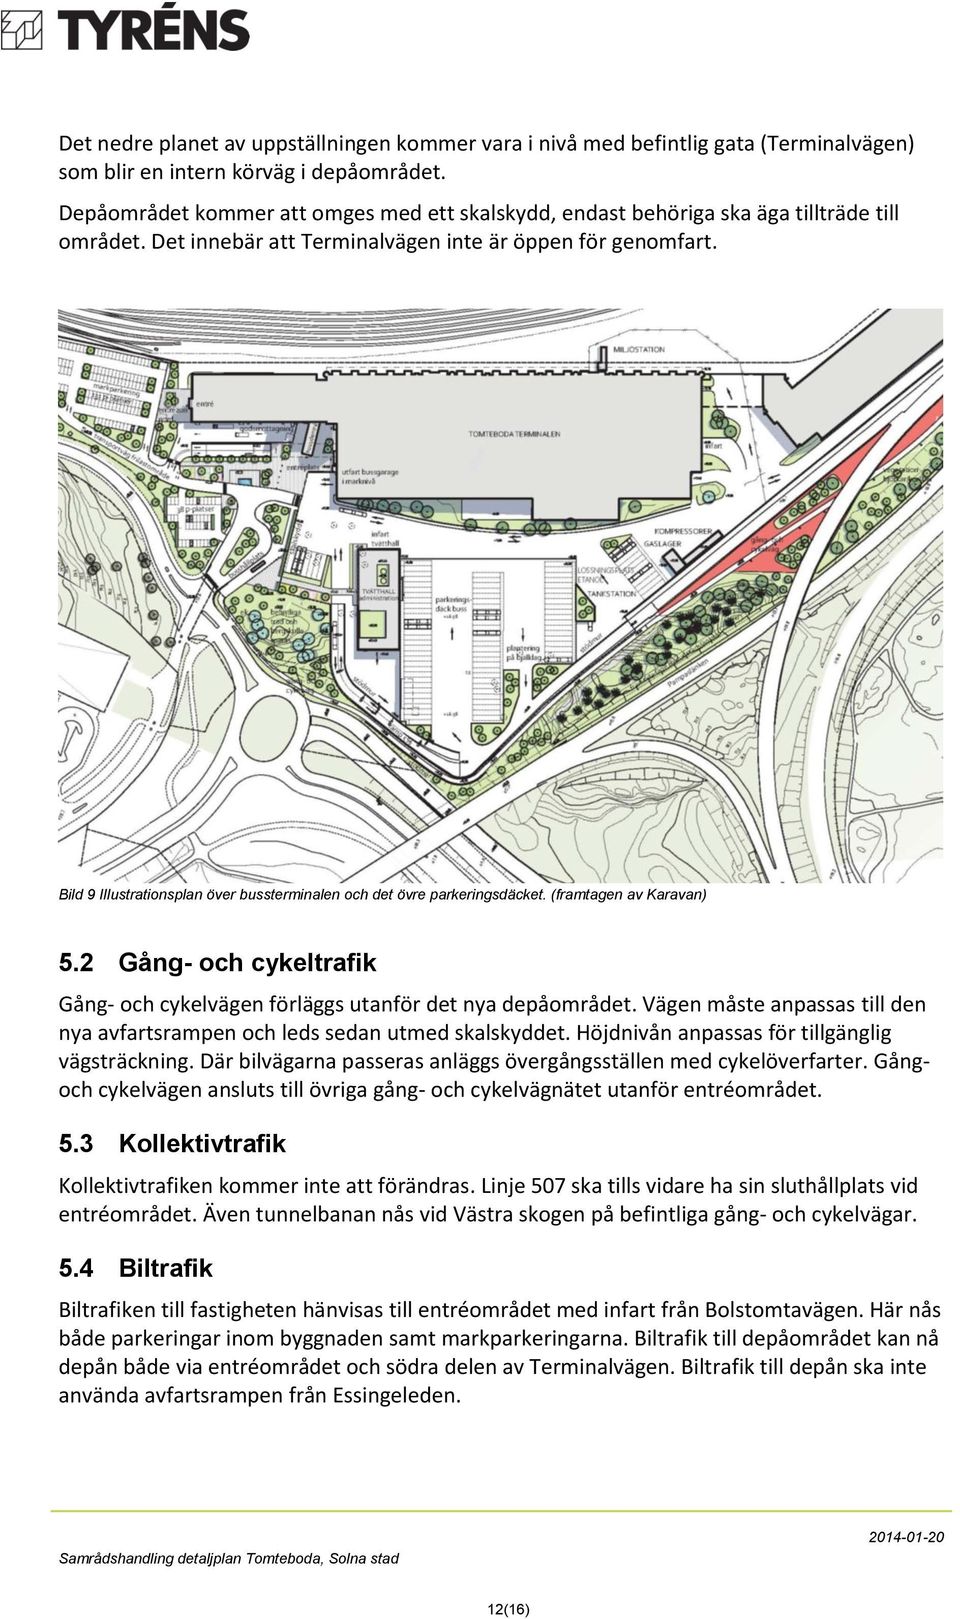 Bild 9 Illustrationsplan över bussterminalen och det övre parkeringsdäcket. (framtagen av Karavan) 5.2 Gång- och cykeltrafik Gång- och cykelvägen förläggs utanför det nya depåområdet.